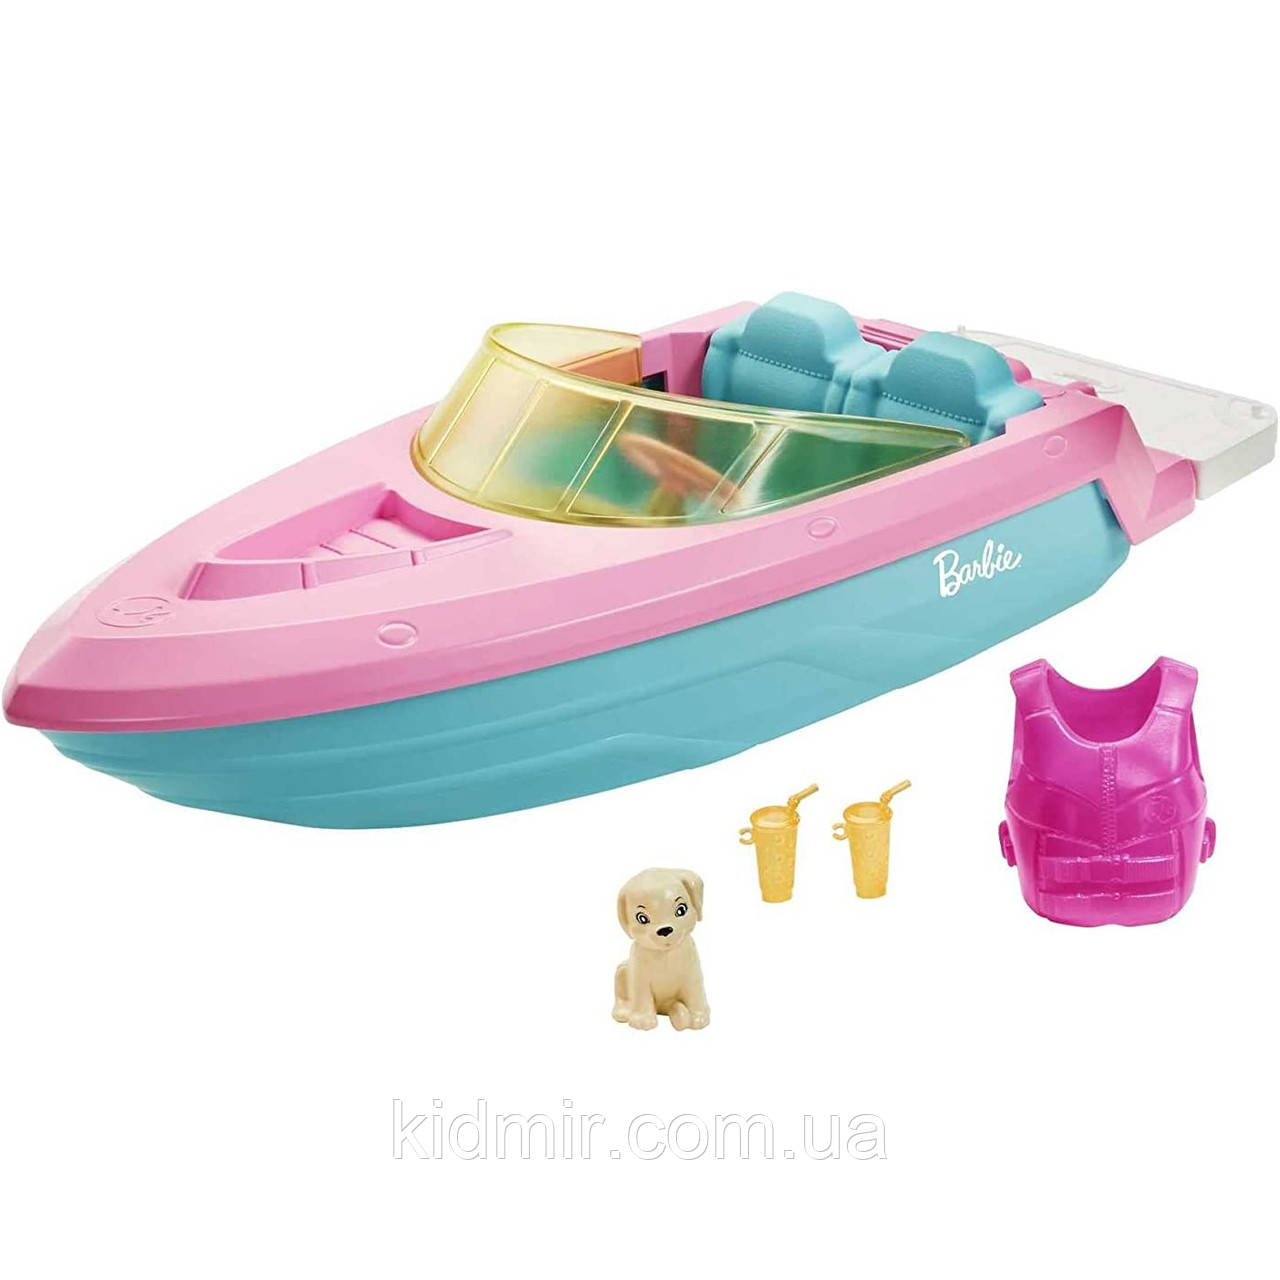 Ігровий набір Катер Барбі Barbie Toy Boat GRG29